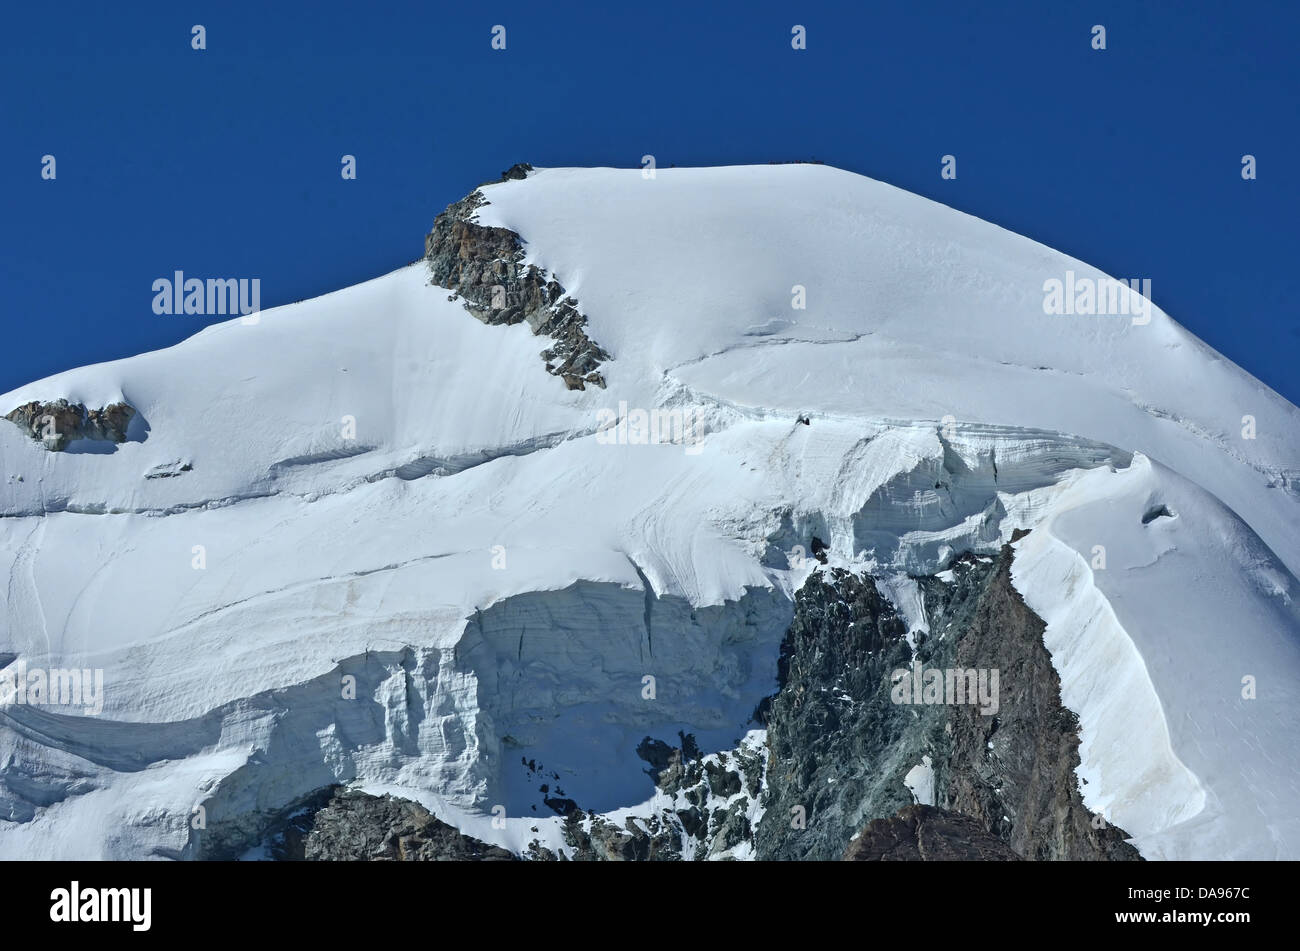 Il vertice e la parete nord del Allalinhorn nel sud delle alpi svizzere tra Zermatt e Saas Fee. Mostra un team di, sul Foto Stock